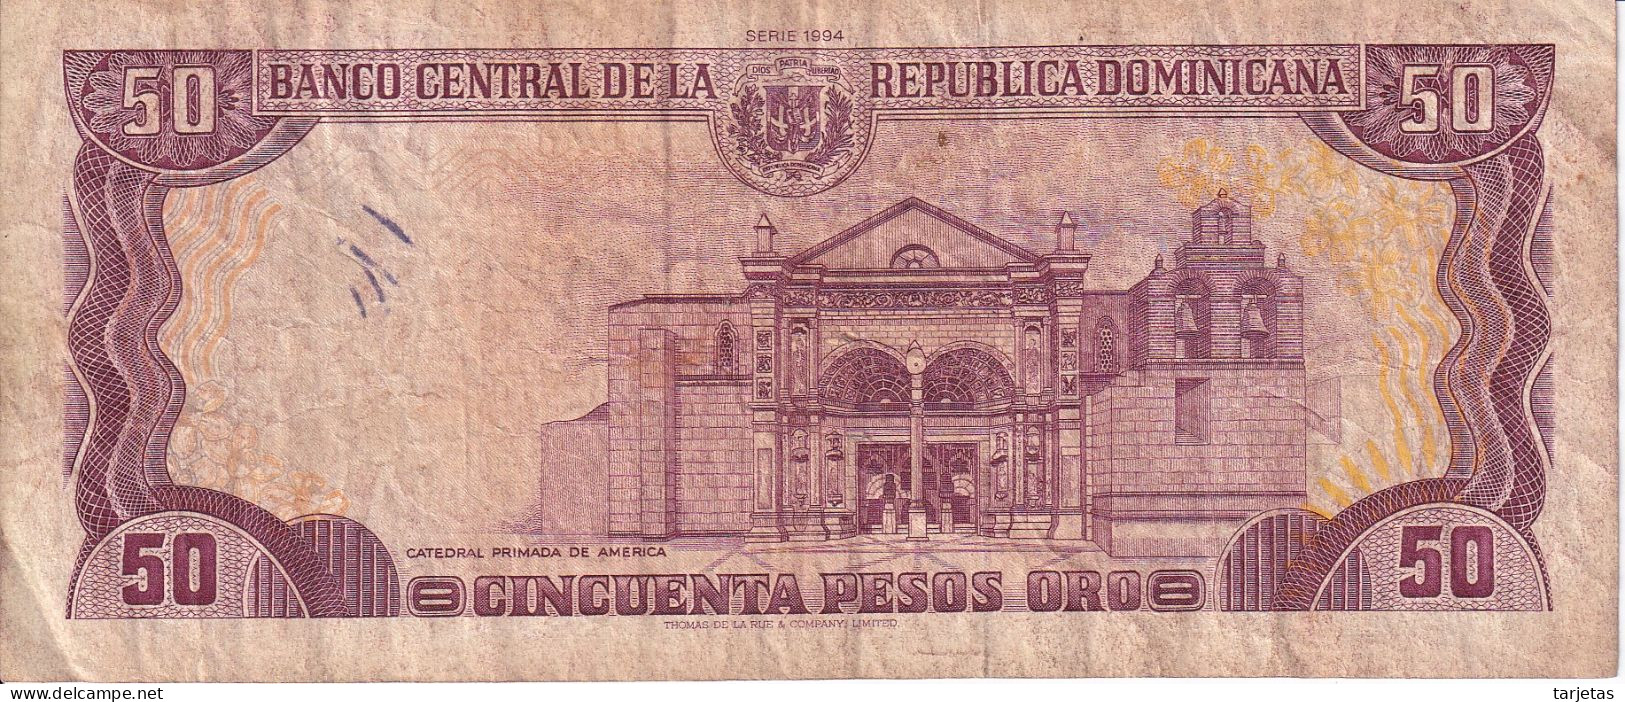 BILLETE DE REP. DOMINICANA DE 50 PESOS ORO DEL AÑO 1994  (BANKNOTE) - República Dominicana